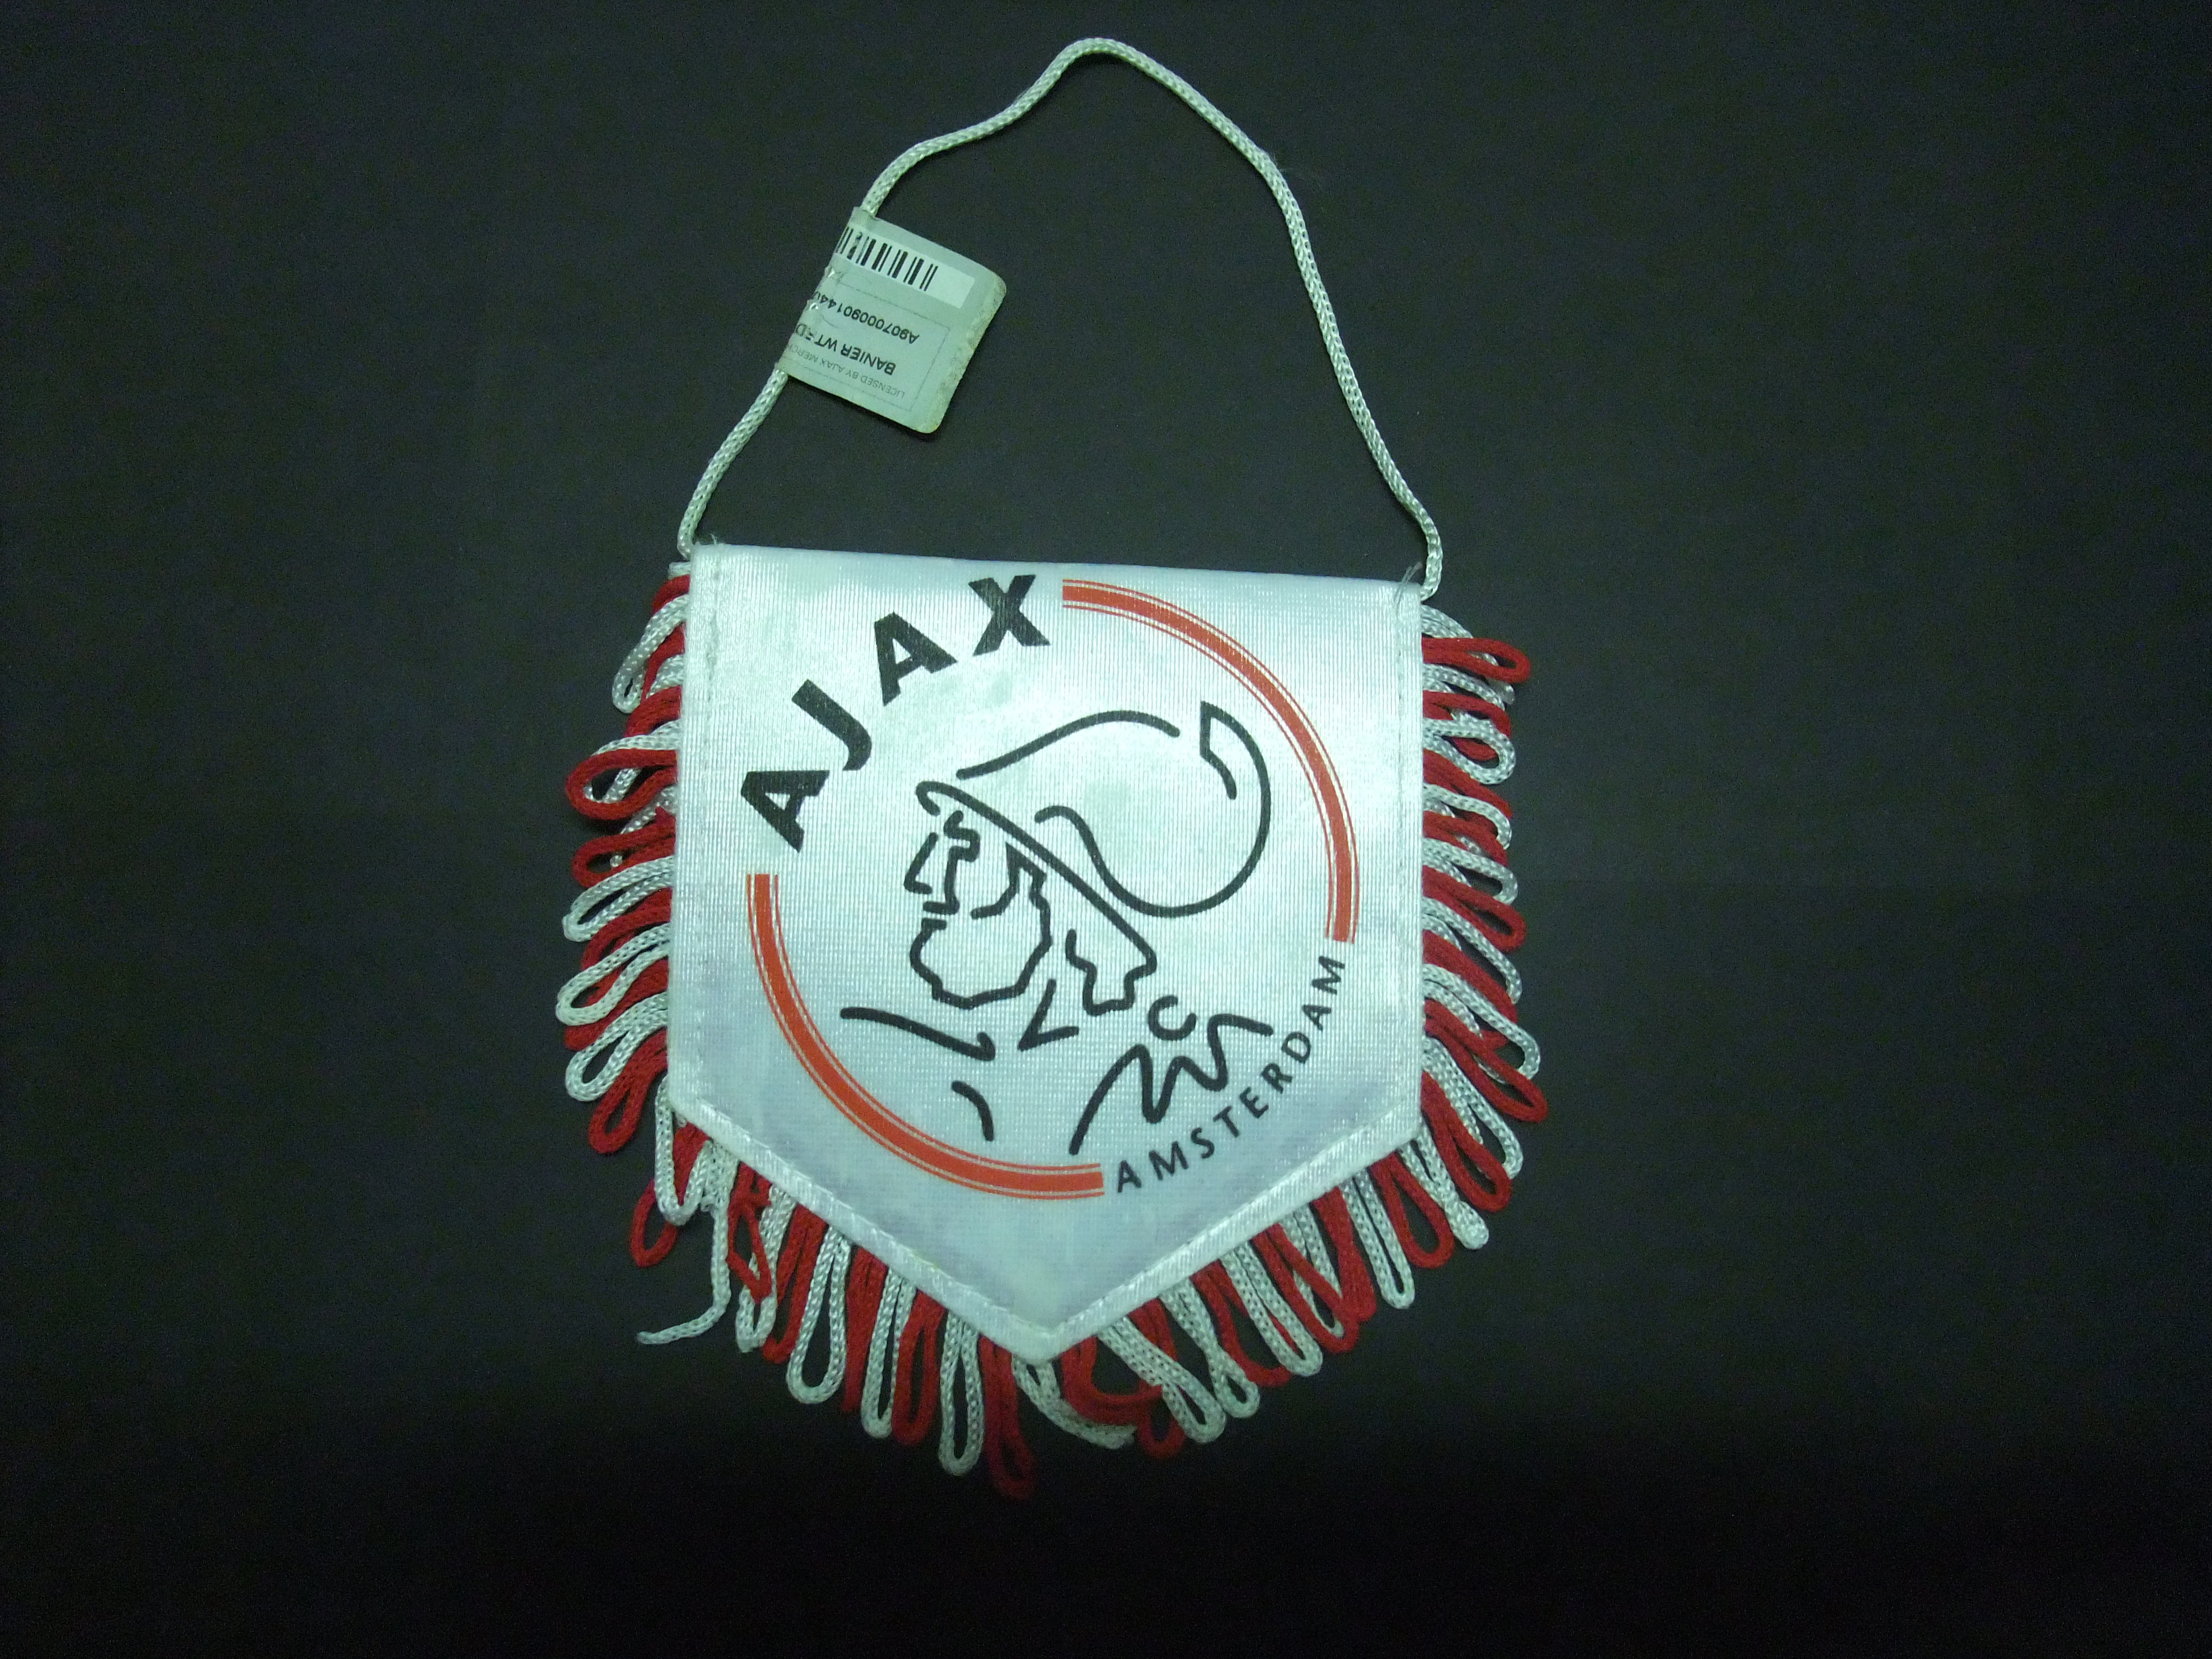 AJAX Amsterdam voetbalvaantje oud logo